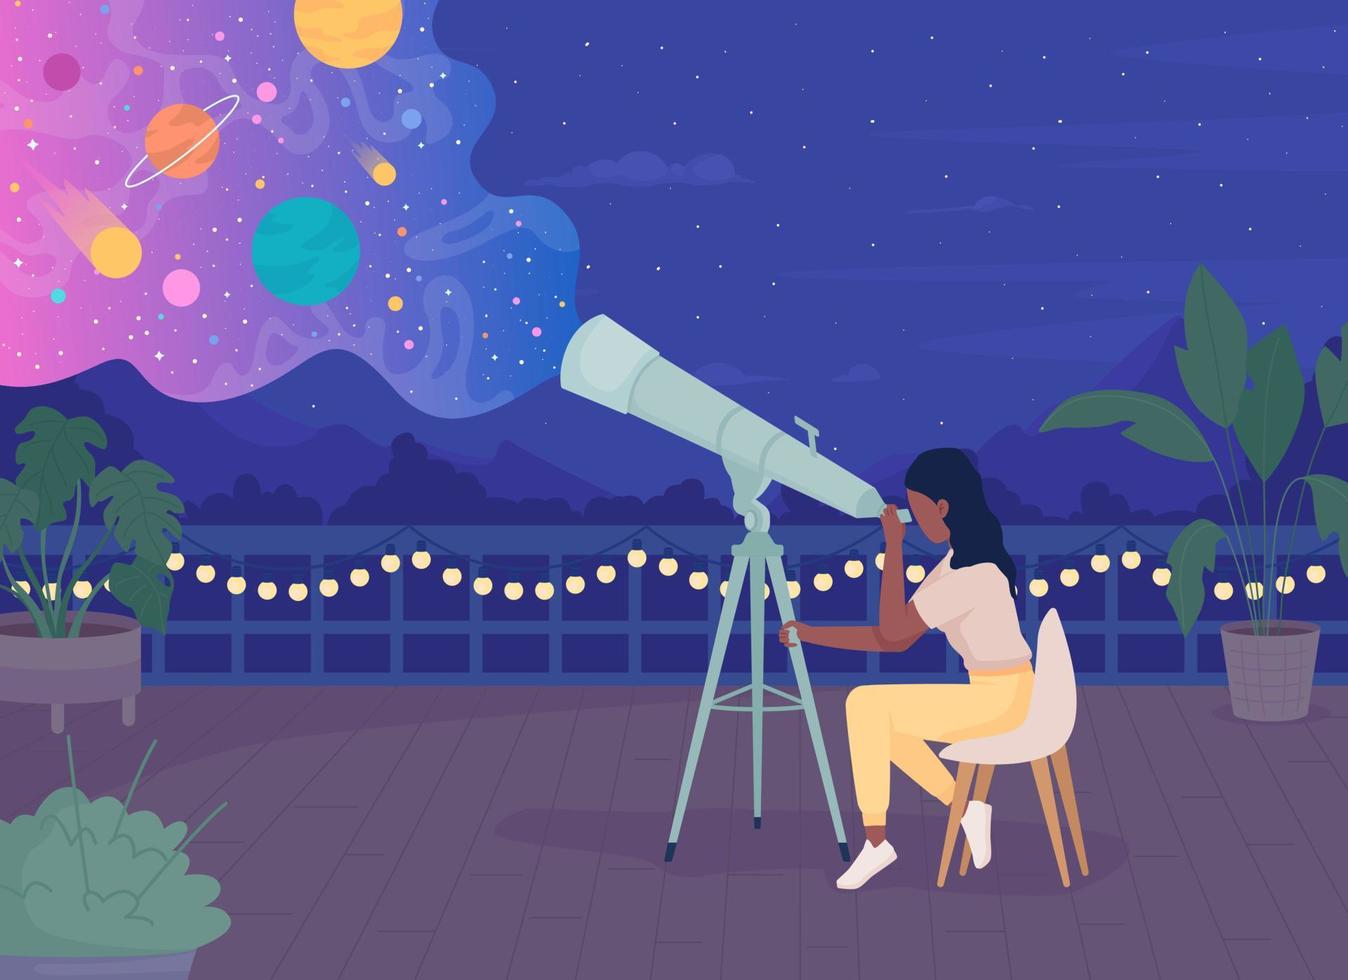 vrouw met telescoop genieten van sterrenkijken op het dak 's nachts egale kleur vectorillustratie vector